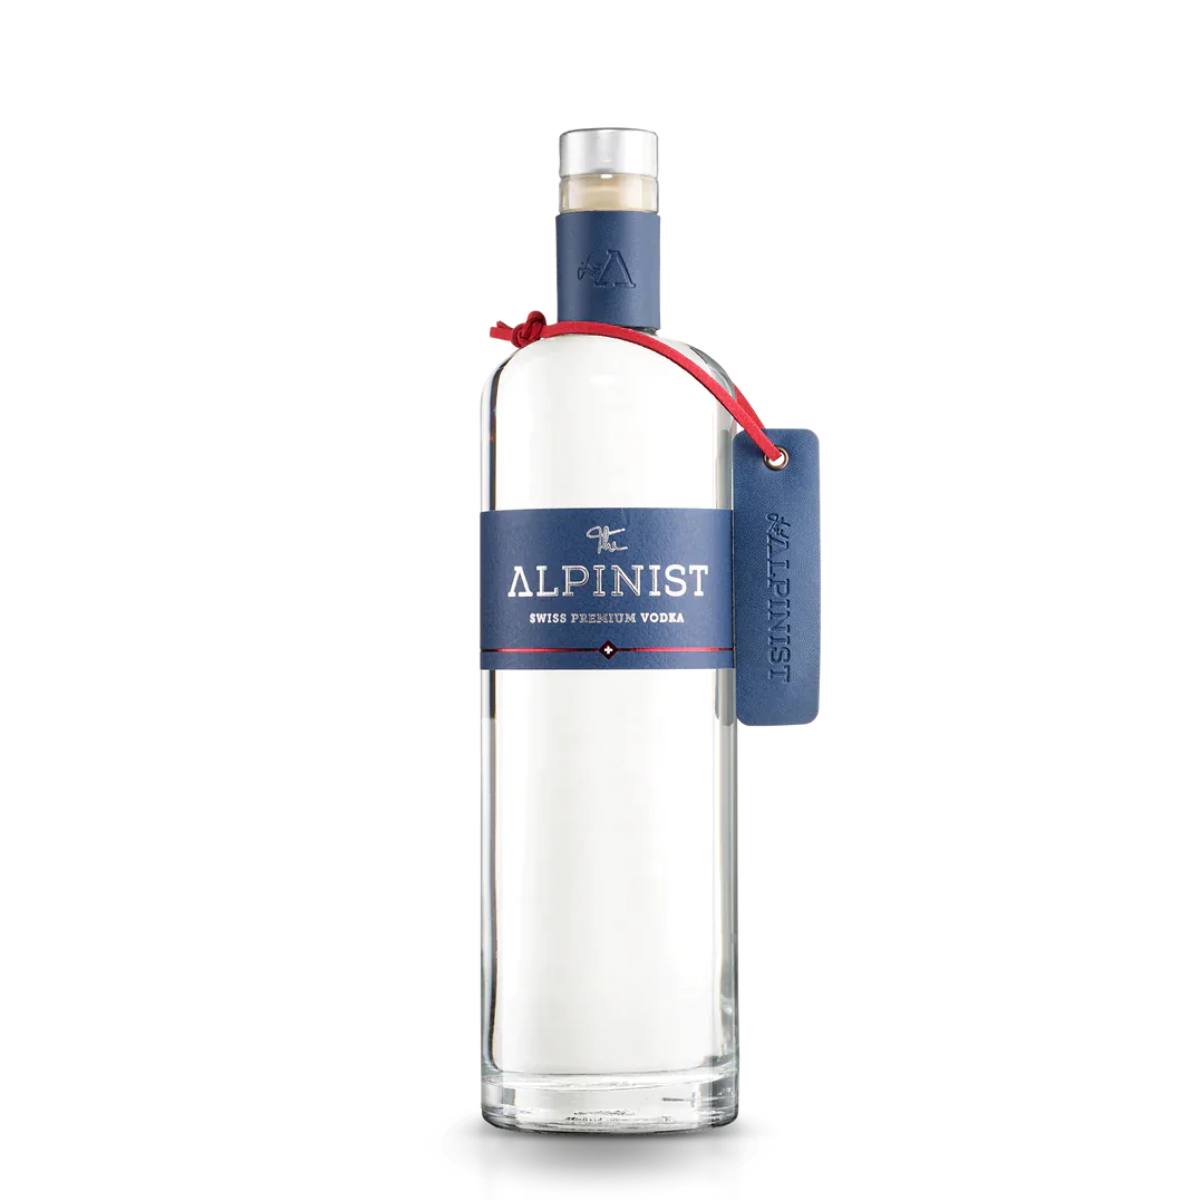 The Alpinist Swiss Premium Vodka 0,7l